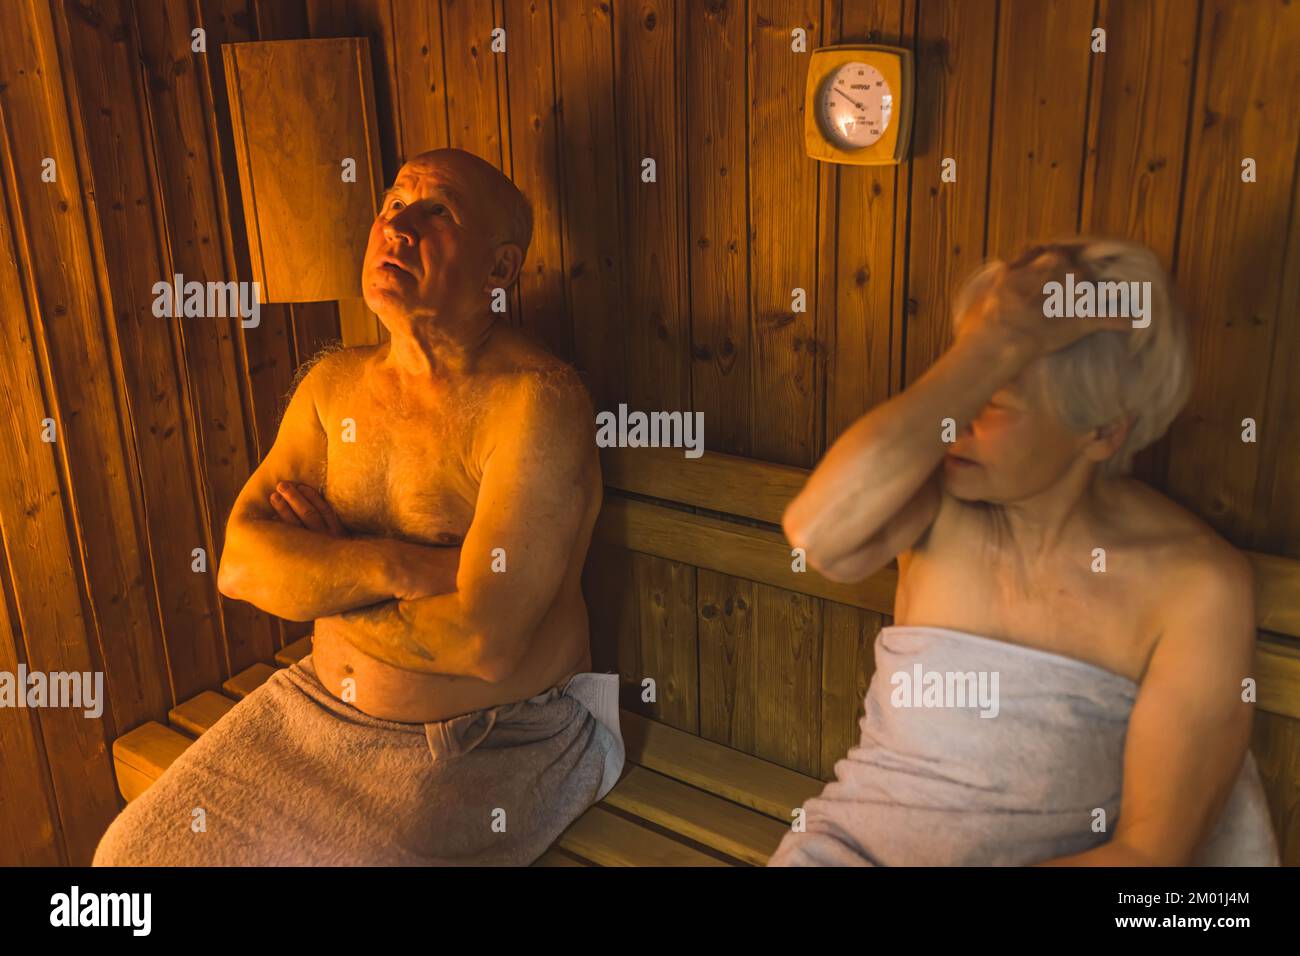 Due anziani caucasici - uomo calvo e donna a pelo corto - si siedono insieme in una sauna di legno in accappatoi di cotone grigio. CONCETTO DI BENESSERE e relax. Foto di alta qualità Foto Stock